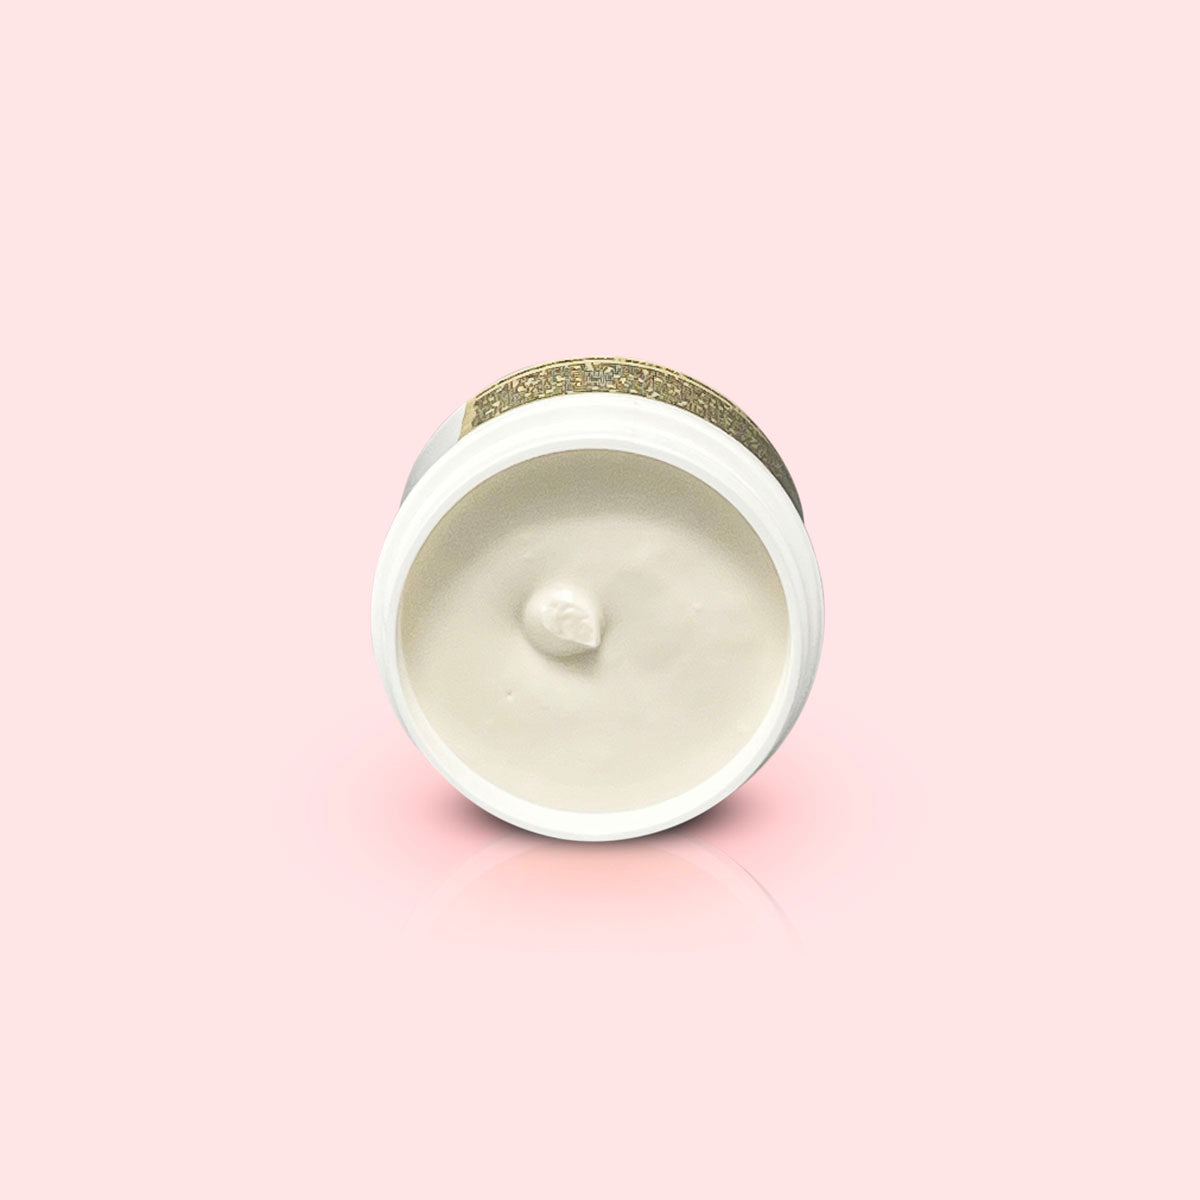 Kronos L' Absolu 6% Saule-Complex-8 Evening Cream